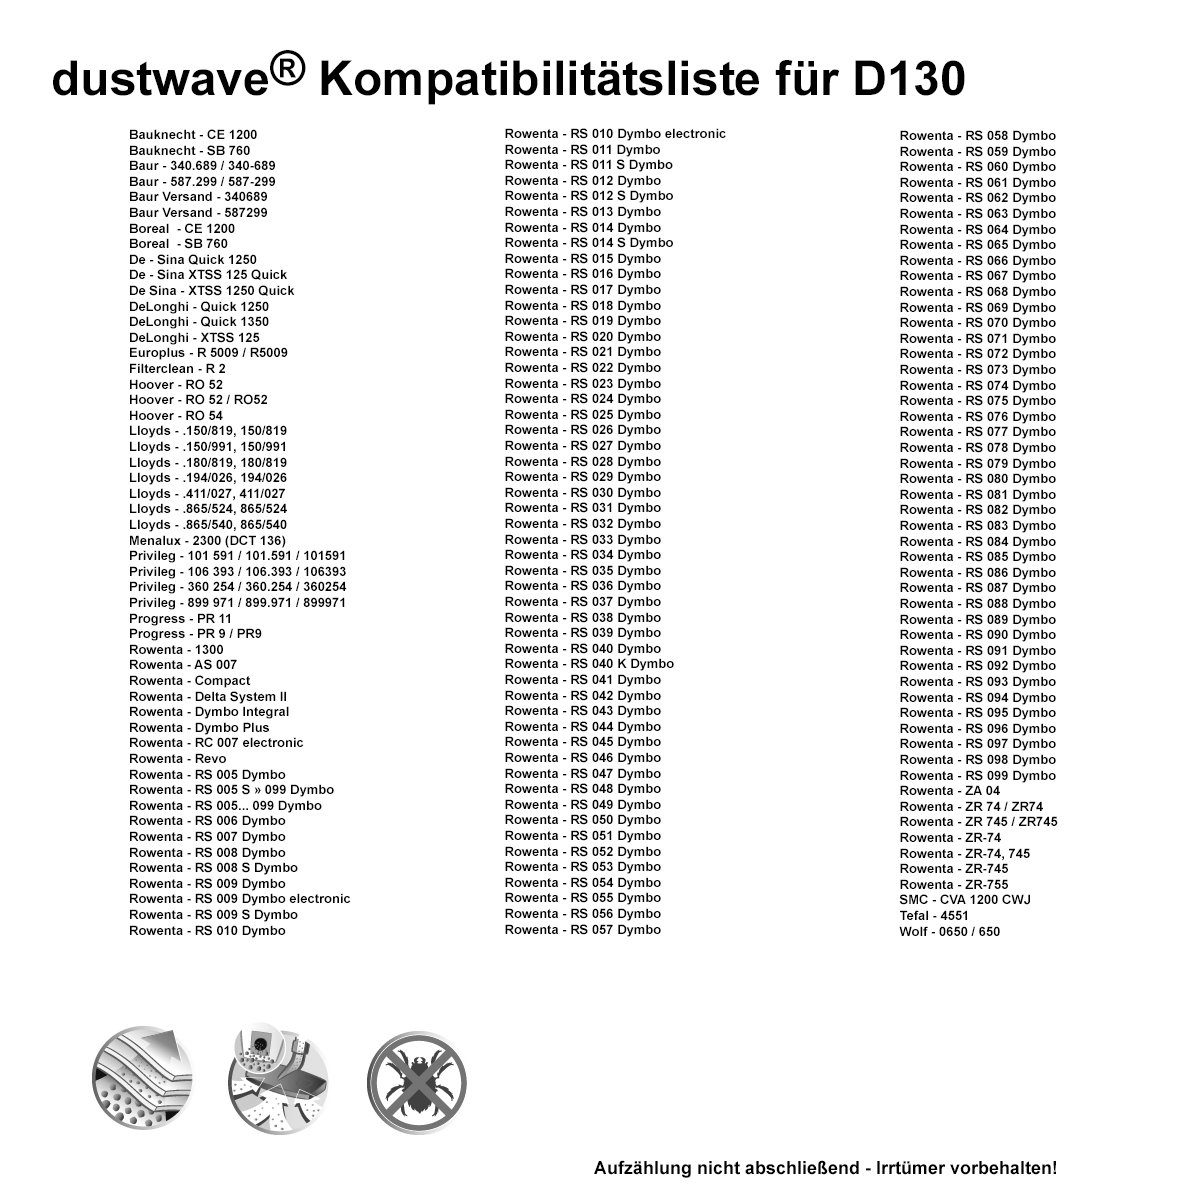 St., Dustwave - Staubsaugerbeutel zuschneidbar) Staubsaugerbeutel Test-Set, Hepa-Filter Test-Set, 15x15cm Baur 1 für 1 340.689 (ca. 340-689, / + passend 1